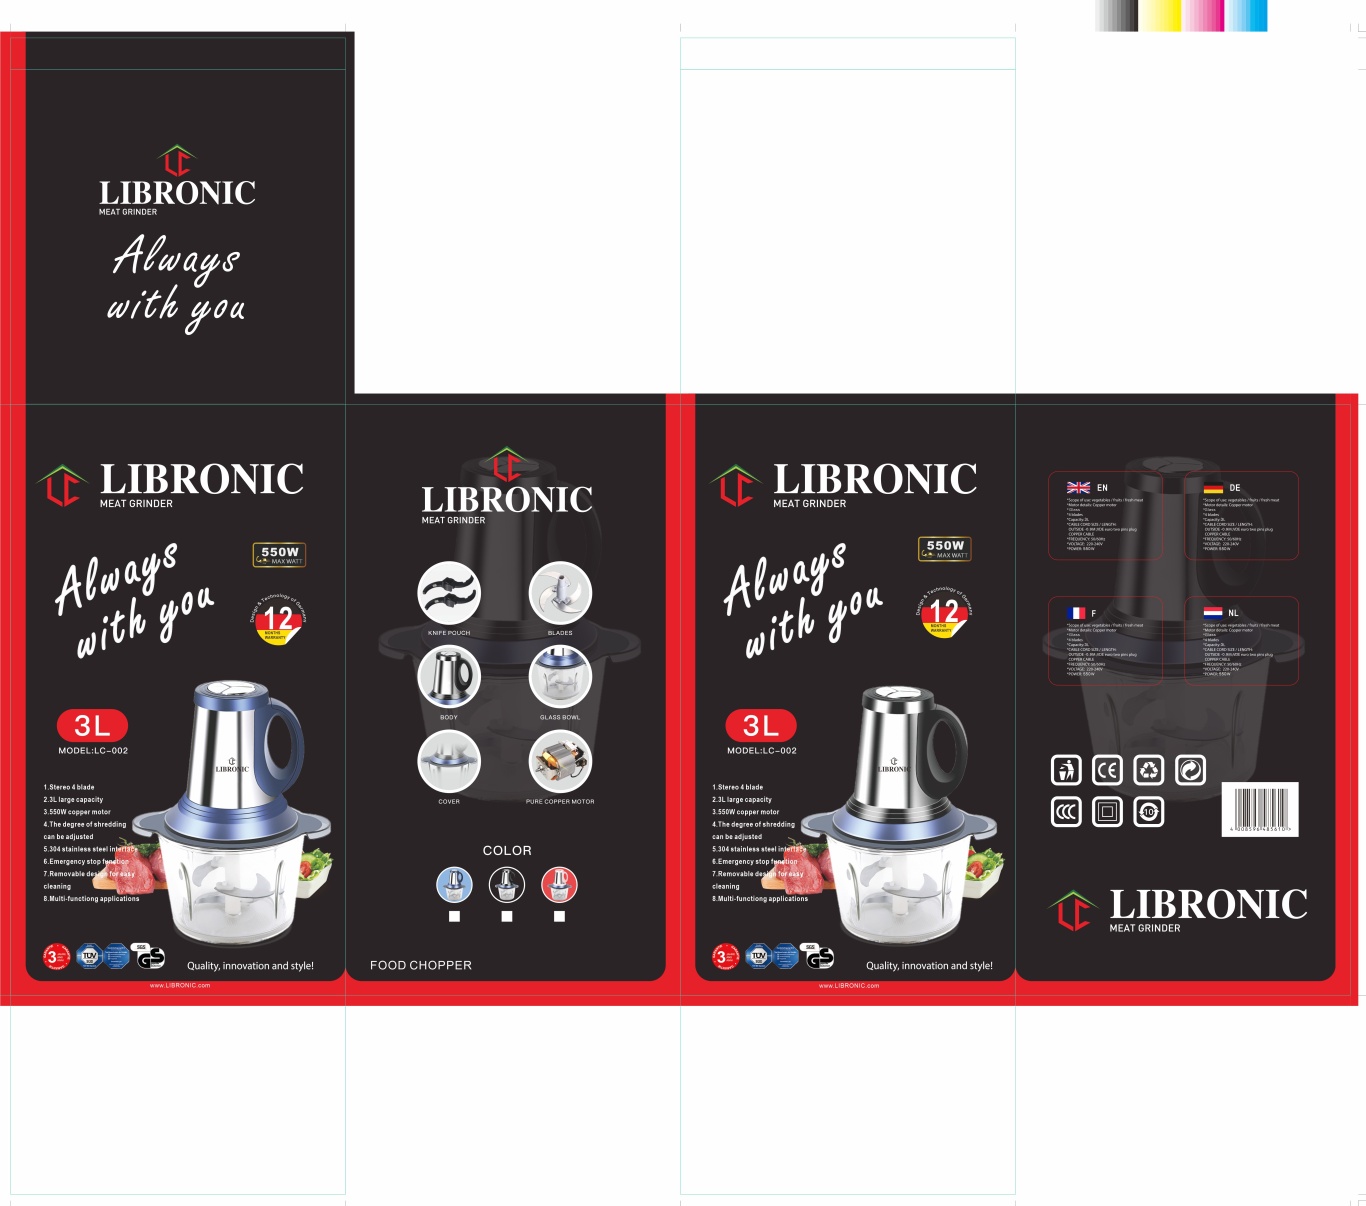 LIBRONIC品牌的绞肉机料理器黑色包装图0